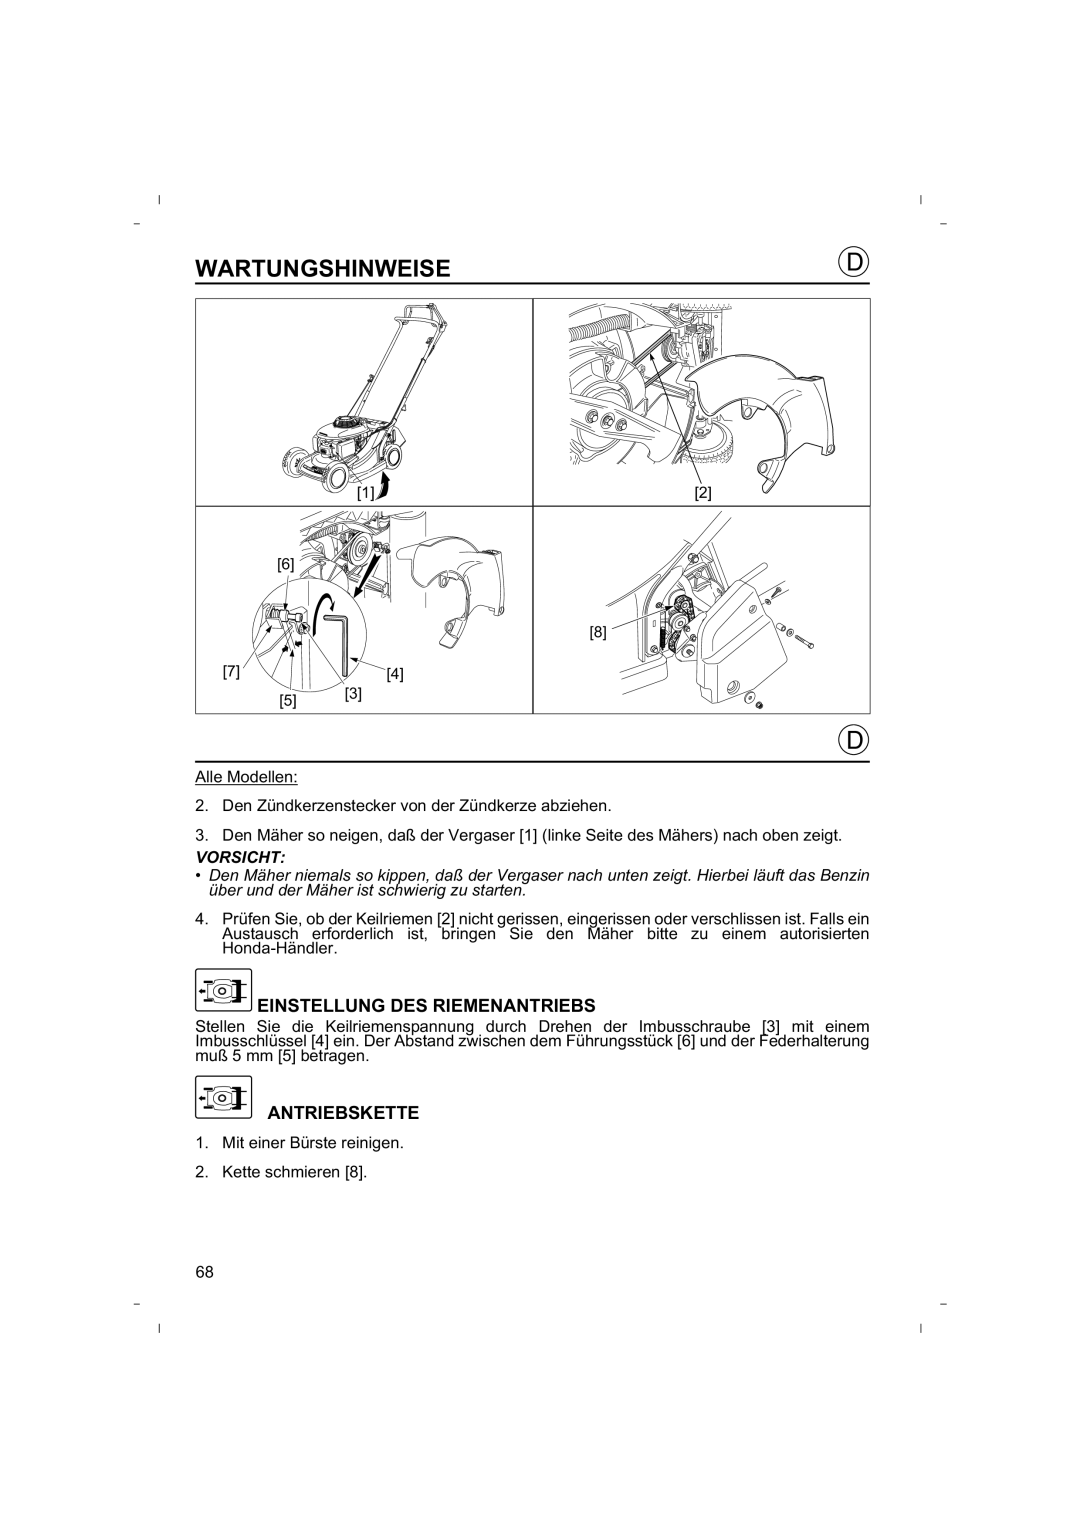 Honda Power Equipment HRB425C owner manual Einstellung Des Riemenantriebs, Antriebskette, Wartungshinweise 